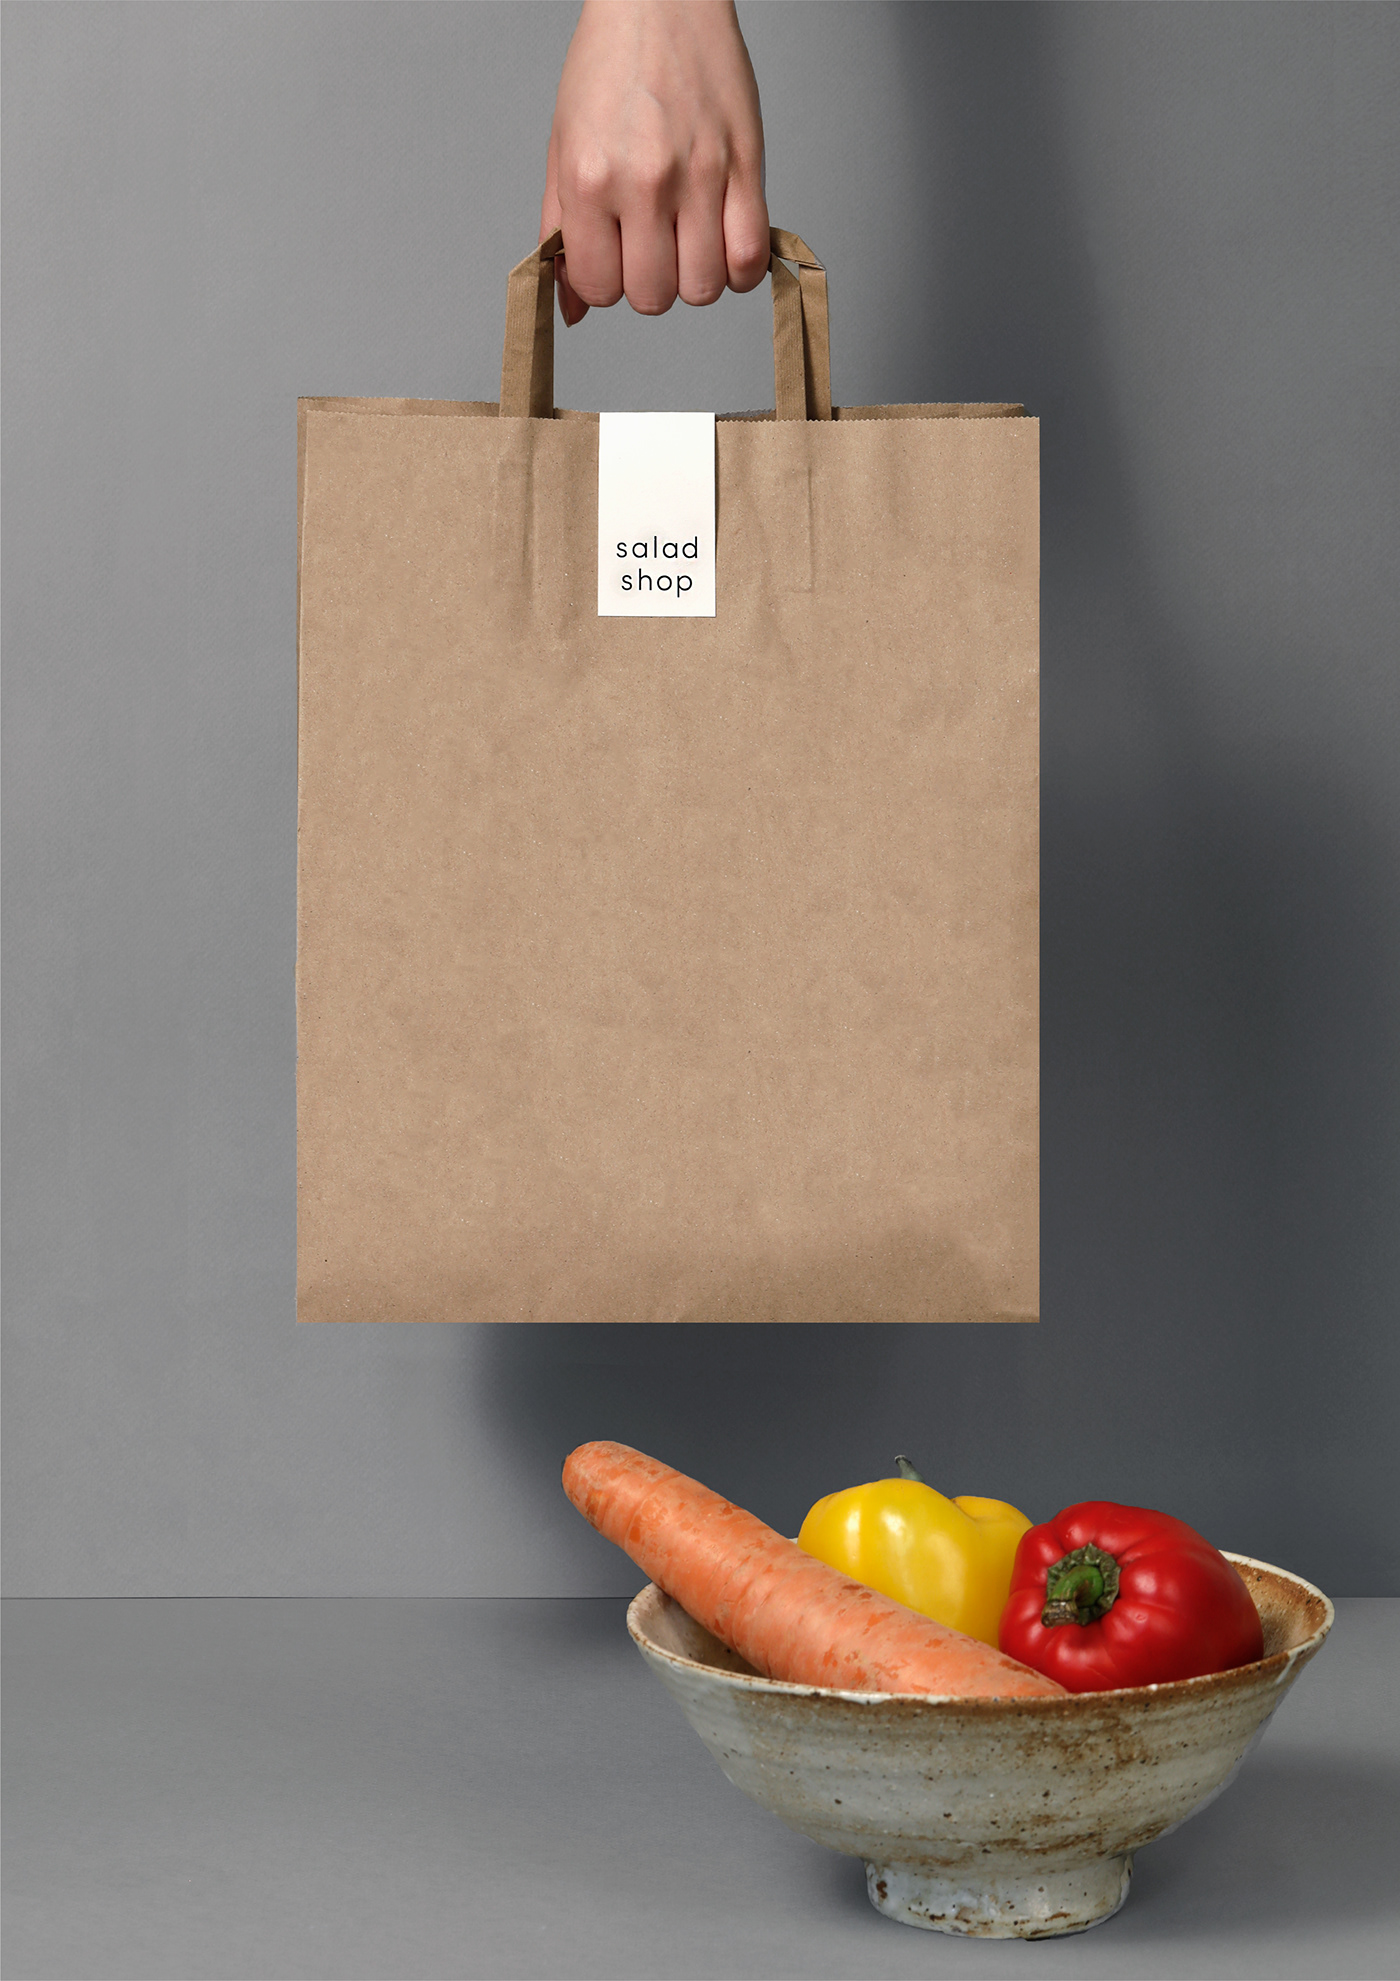 branding  graphic design  identity packaging design salad information season shop vegetables cafe